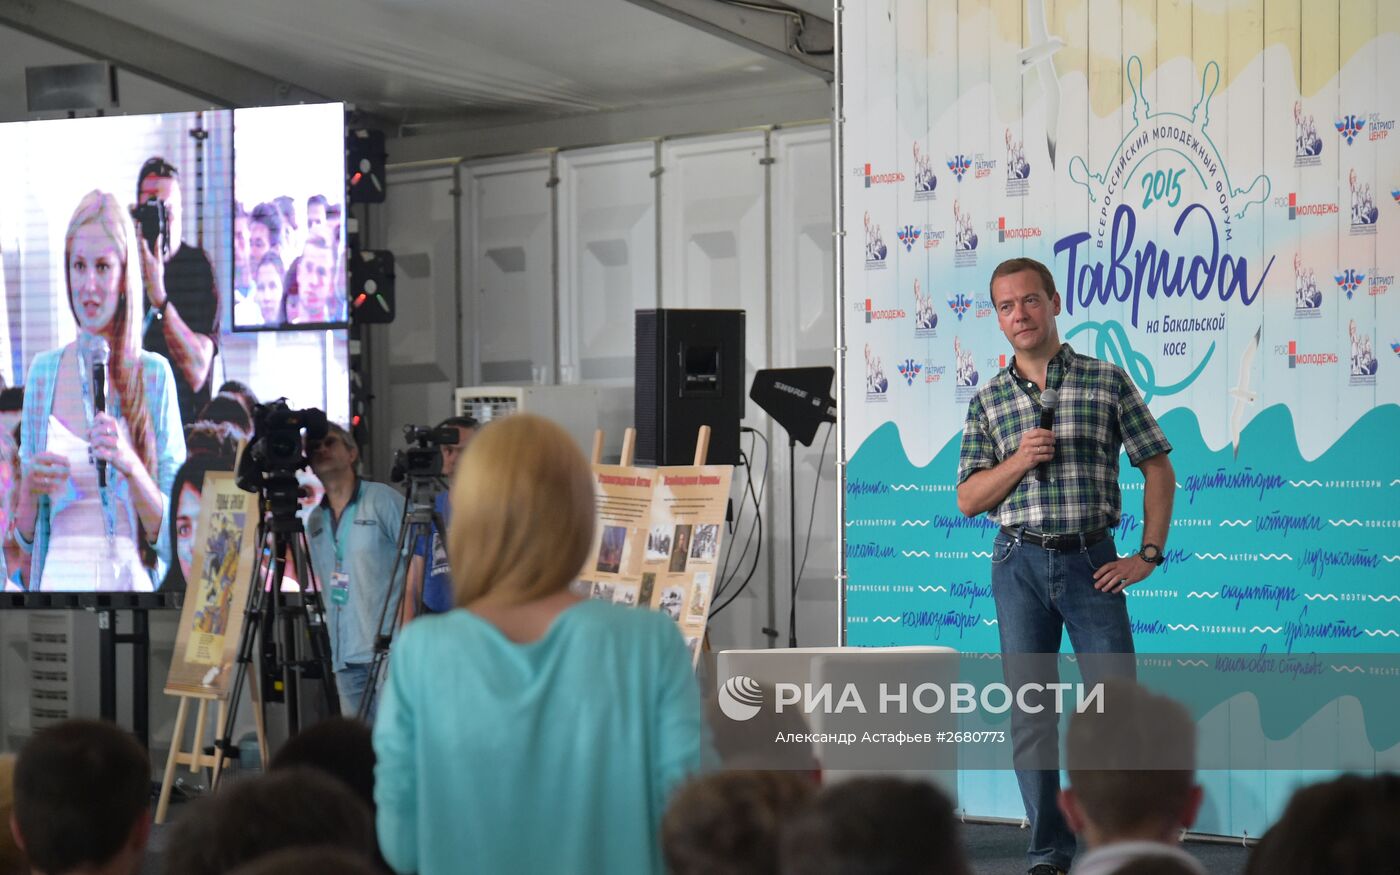 Рабочая поездка премьер-министра РФ Д.Медведева в Крым